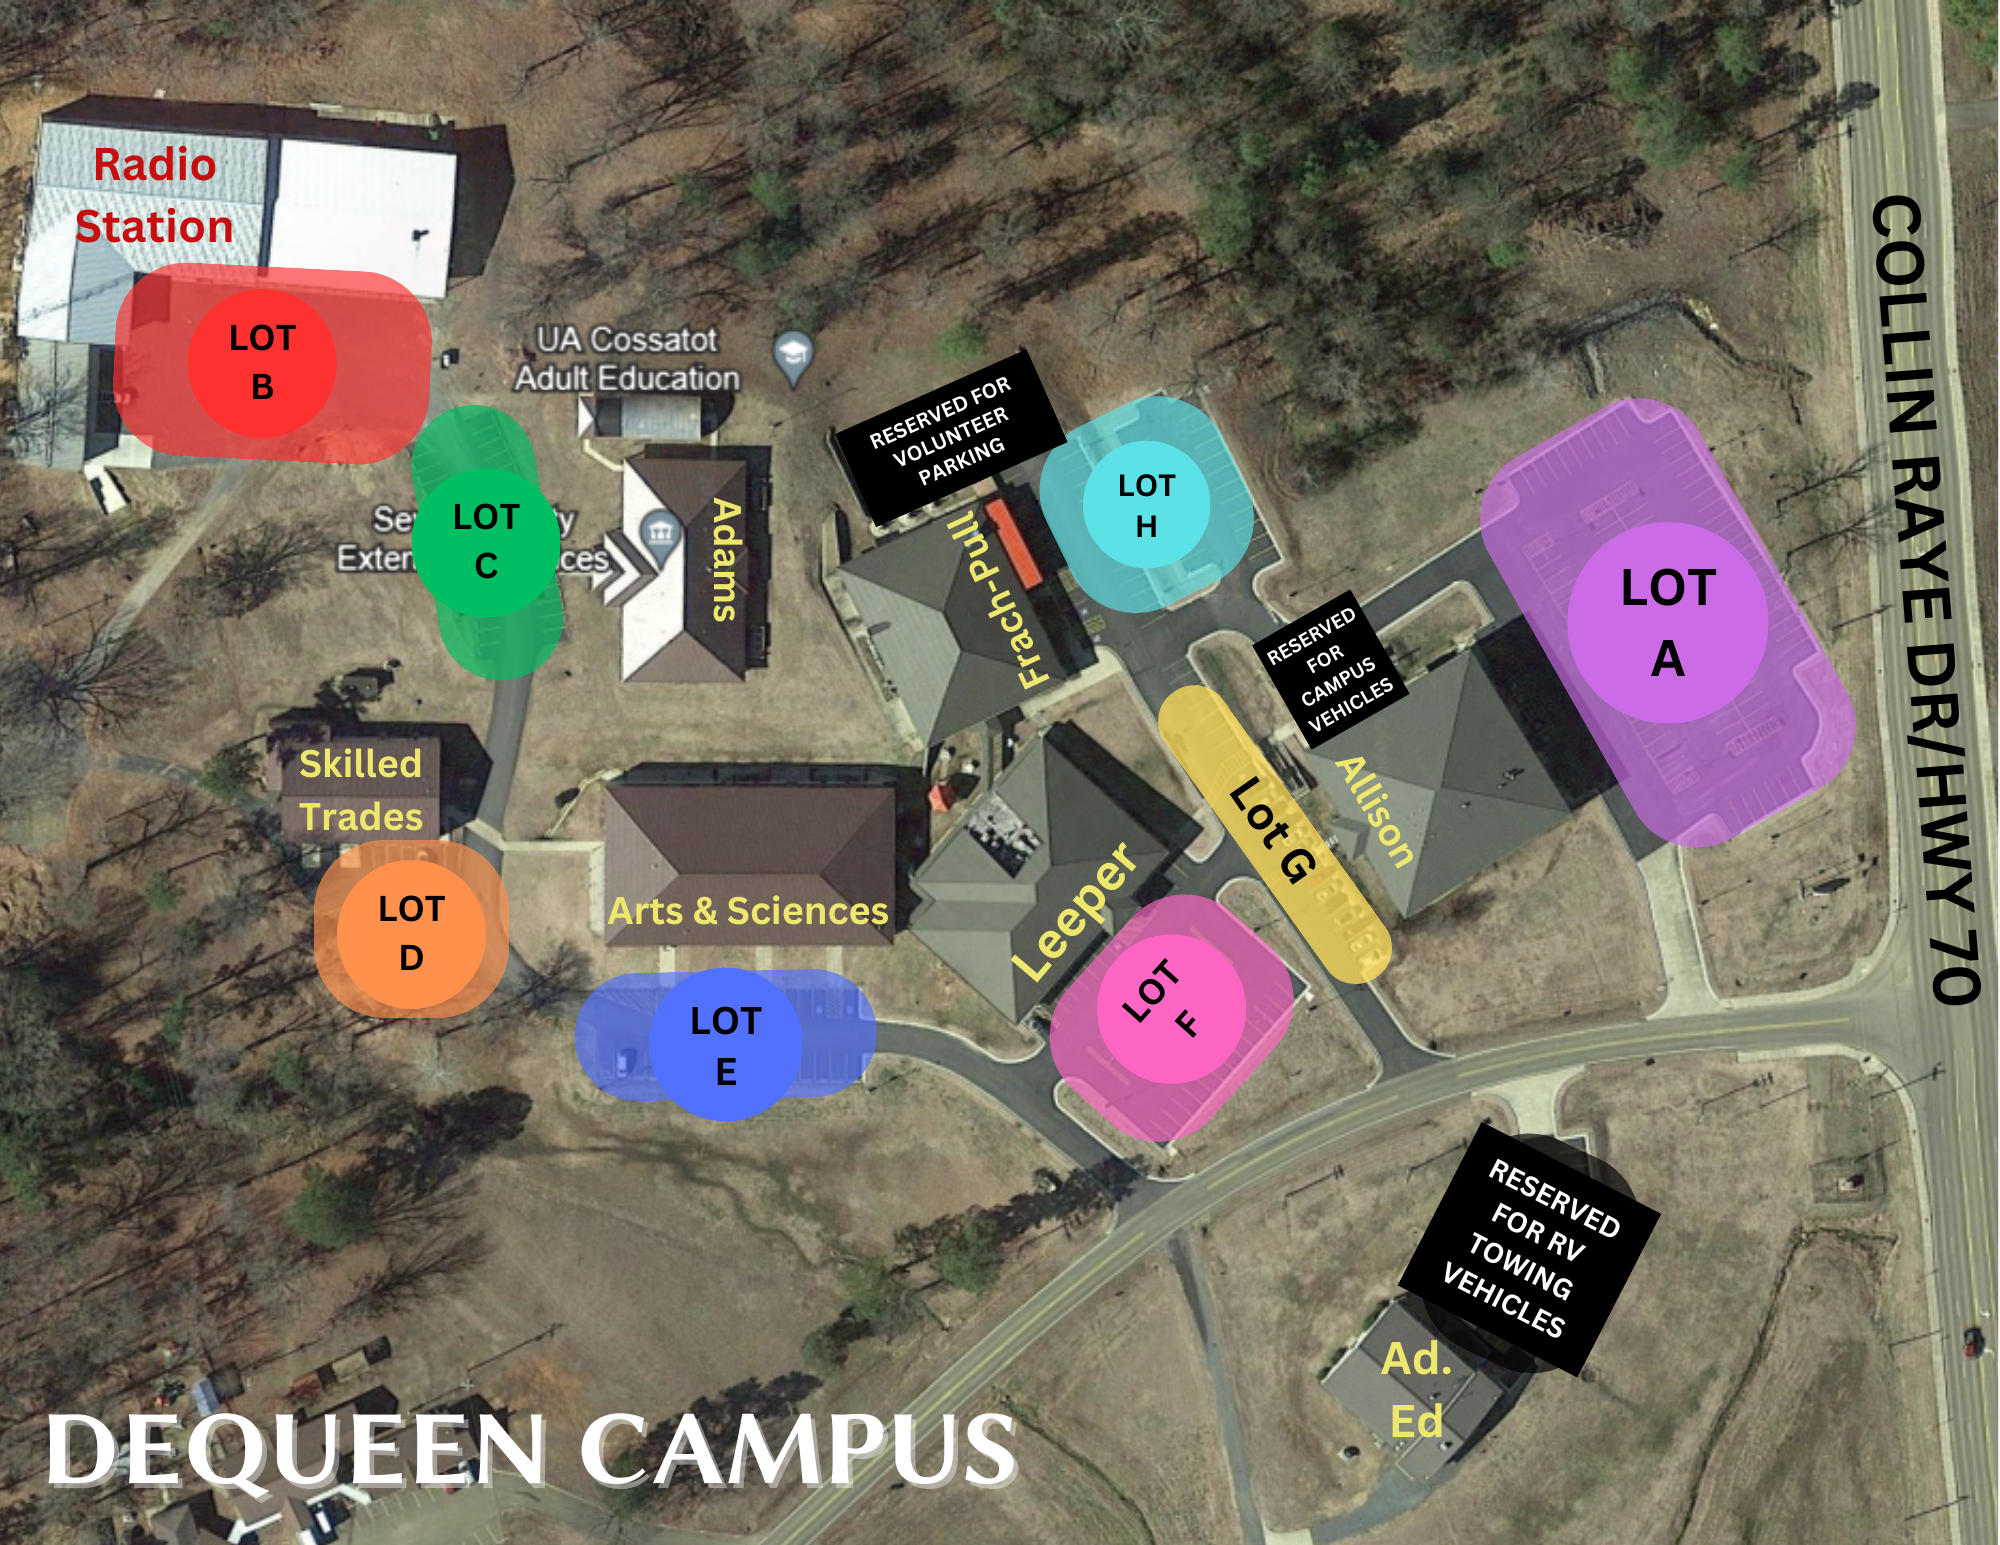 DQ Campus - Aerial Map of Designated Lots